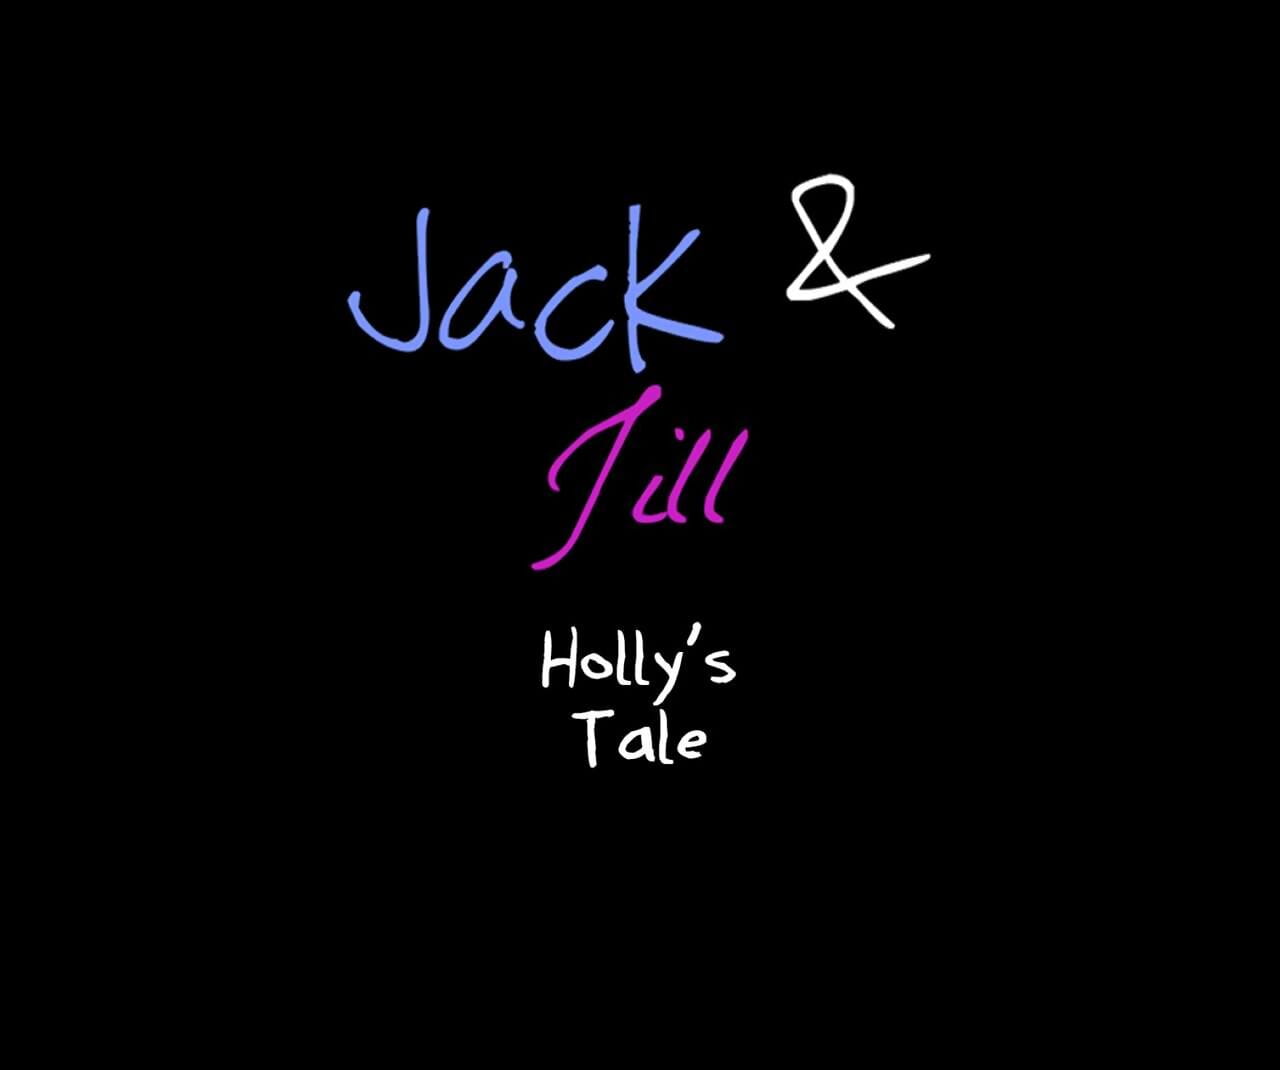 جاك و جيل Hollys حكاية page 1